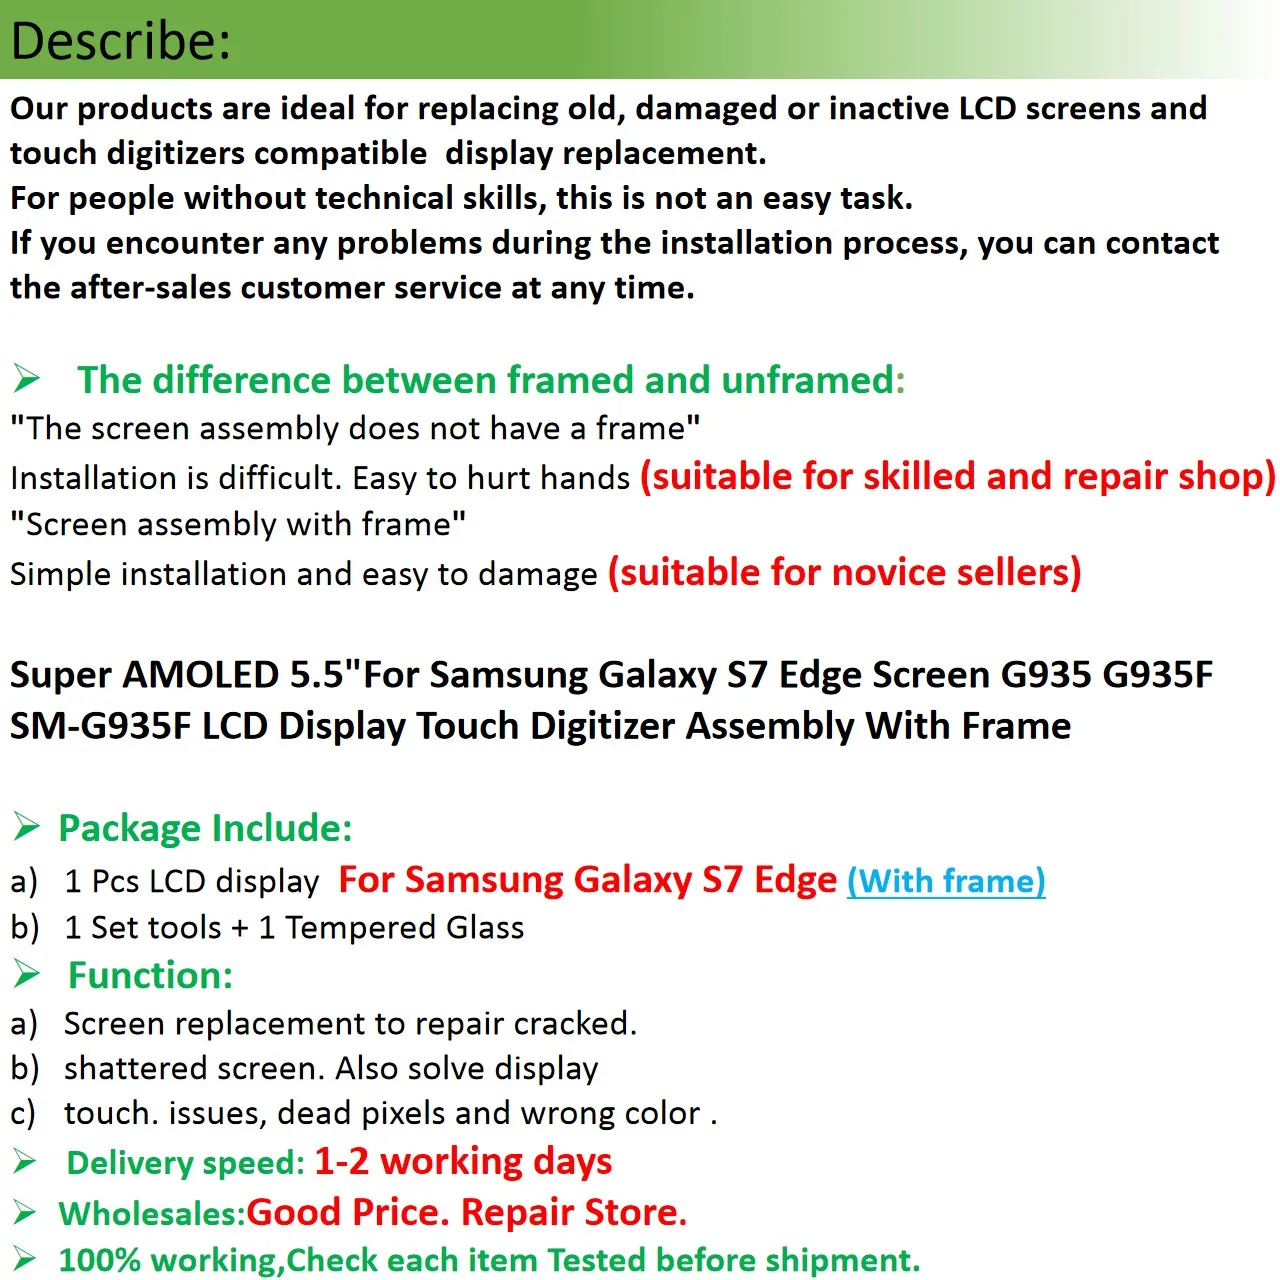 Super AMOLED 5," для samsung Galaxy S7 Edge экран G935 G935F SM-G935F ЖК-дисплей сенсорный дигитайзер в сборе с рамкой